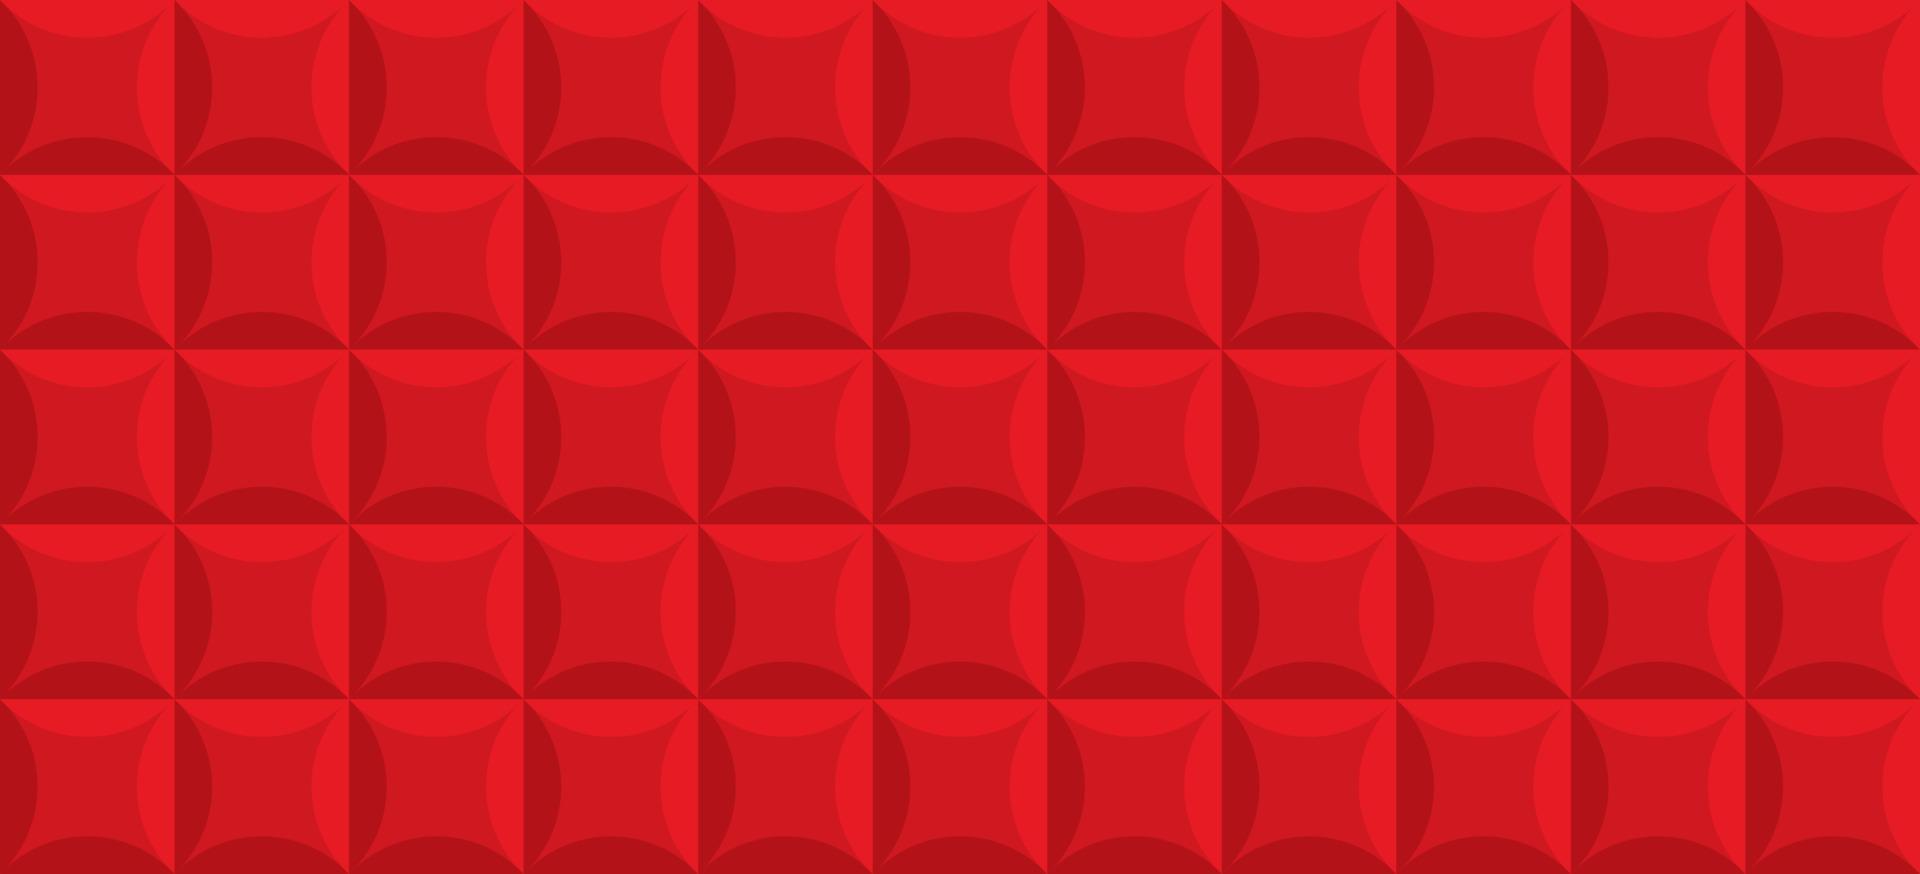 textura realista de baldosas rojas para decoración de interiores con forma cuadrada. plantilla de superficie geométrica. fondo vintage de tapicería de cuero de lujo. diseño abstracto de papel tapiz moderno. ilustración vectorial vector